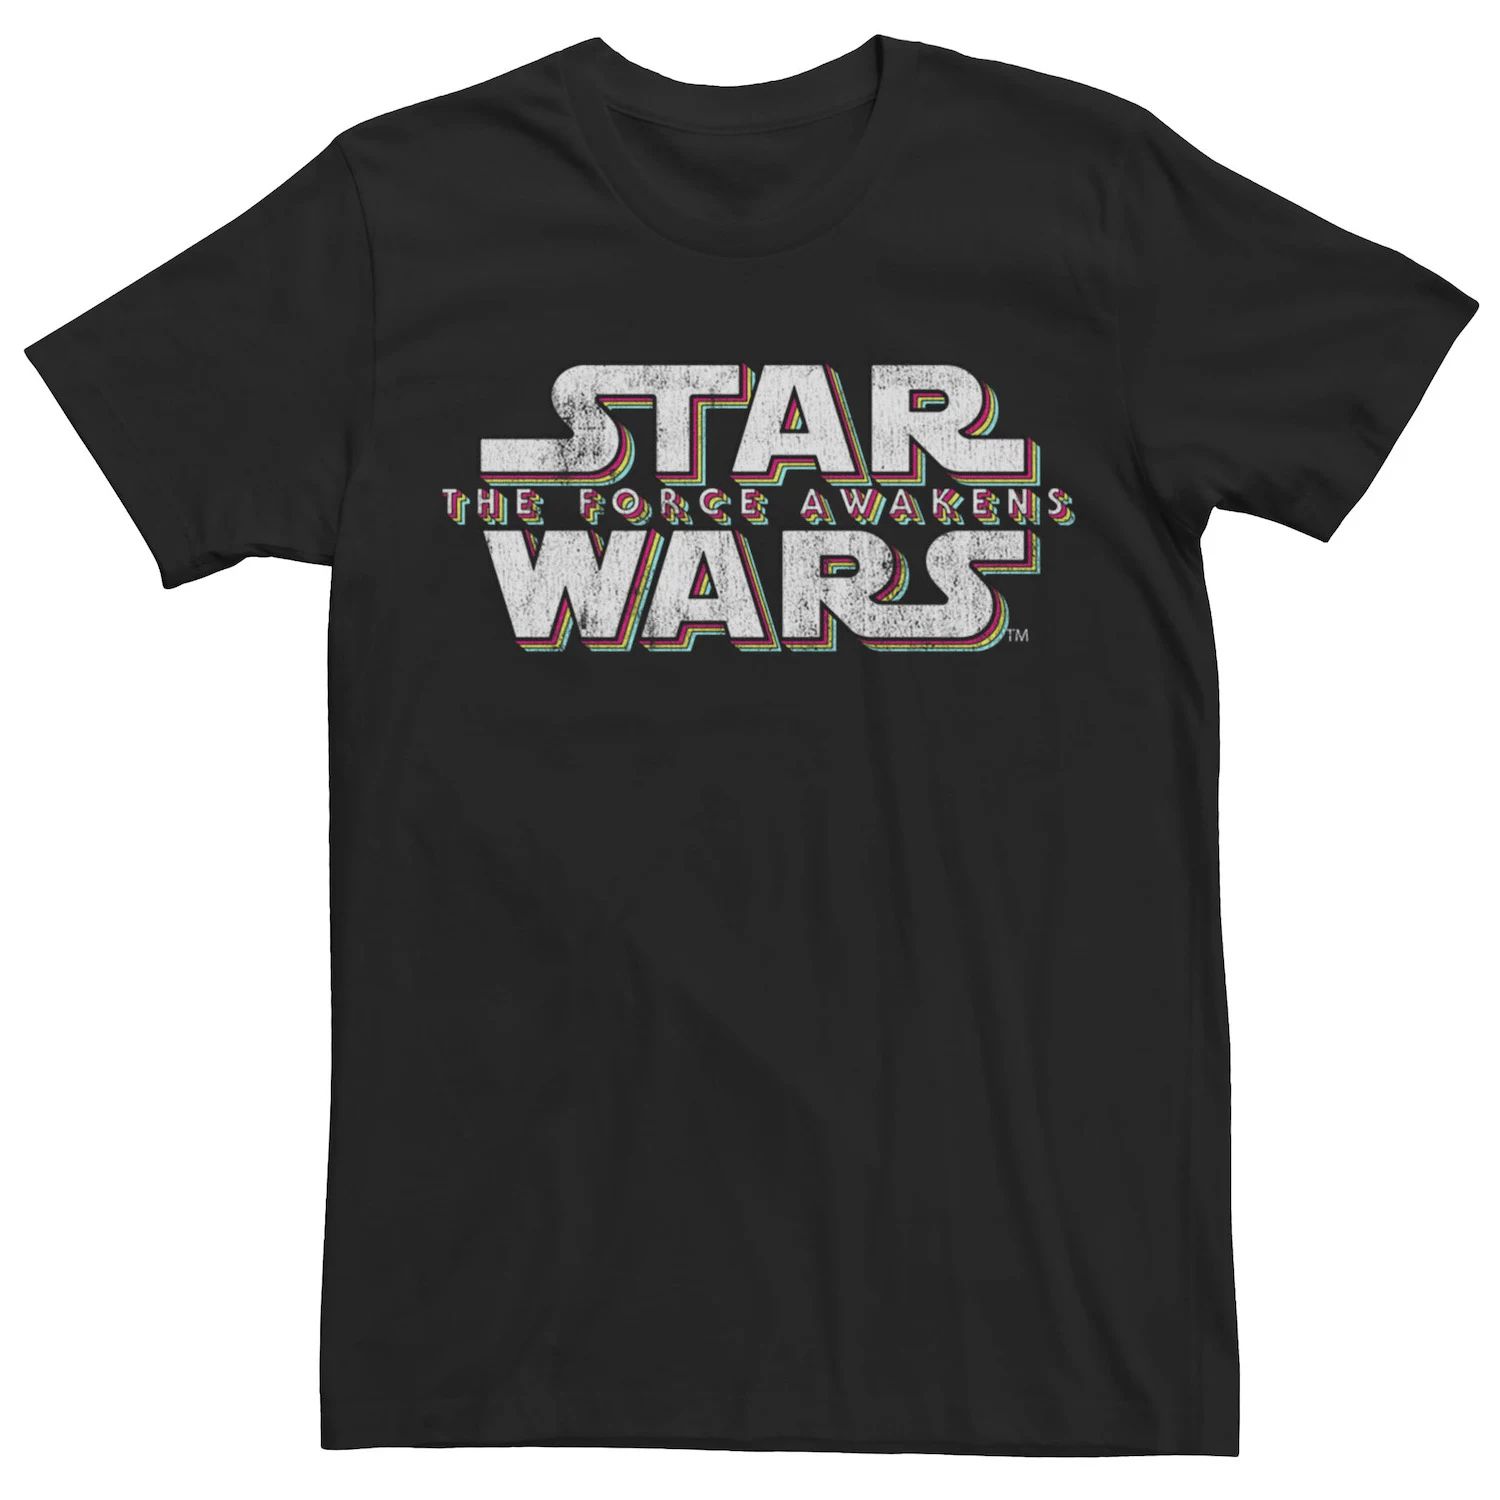 цена Мужская футболка с логотипом The Force Awakens Title Star Wars